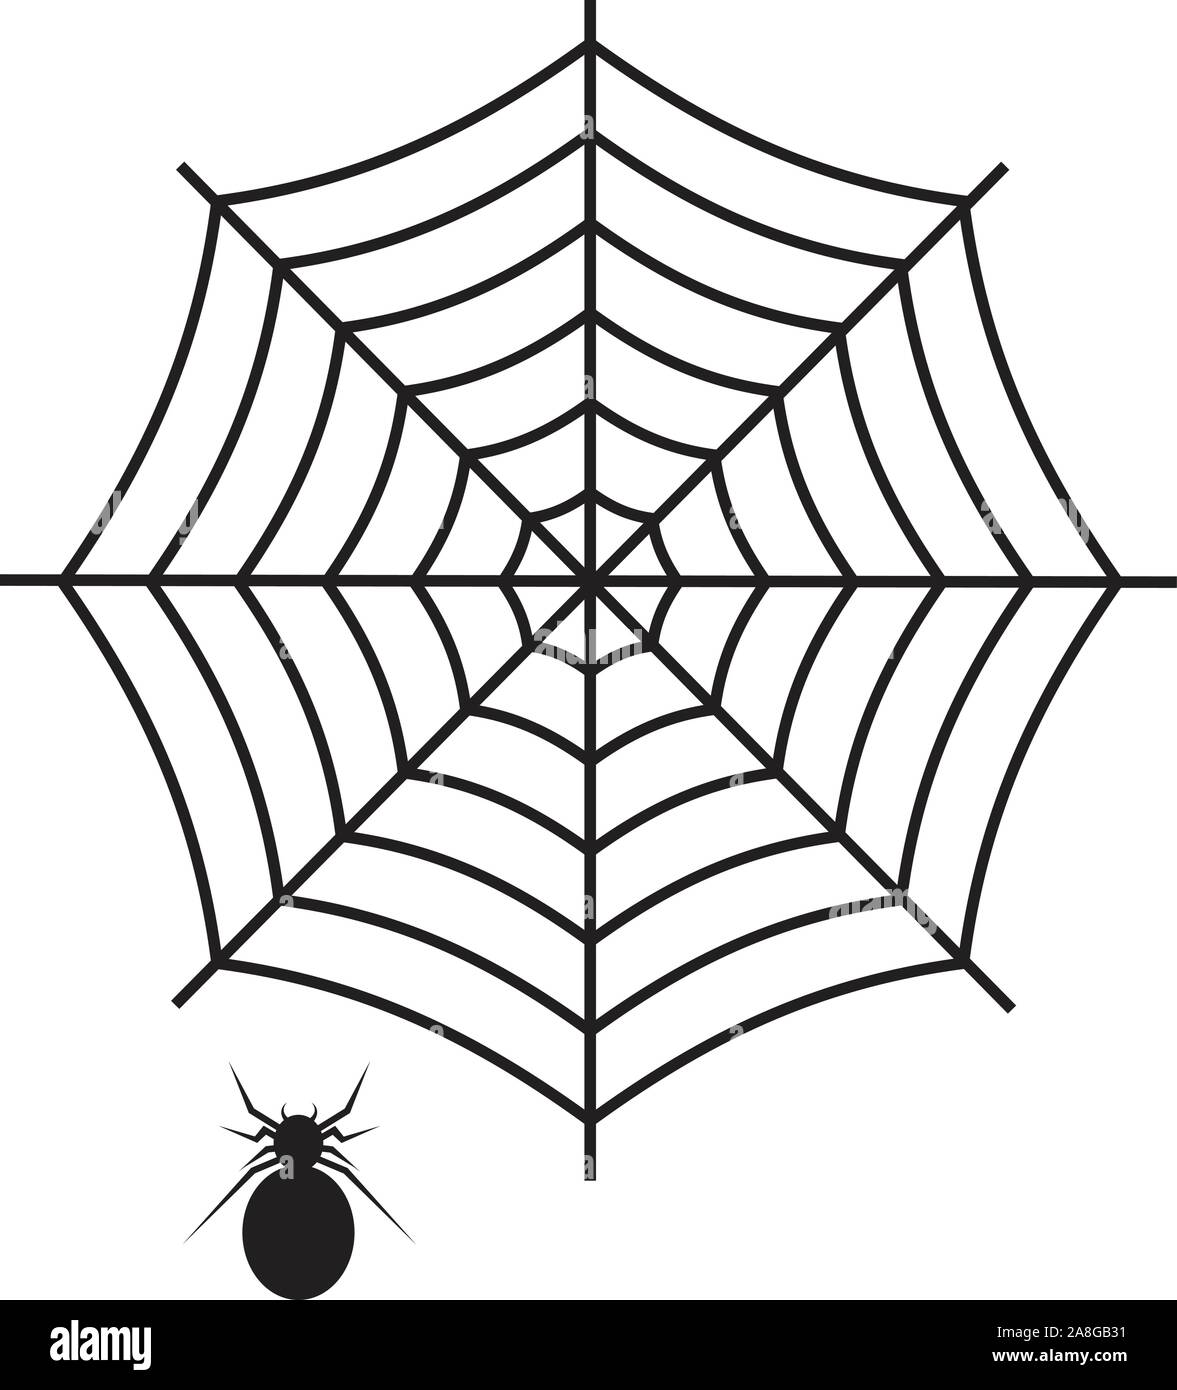 Icono de tela de araña sobre fondo blanco. Estilo plano. tela de araña y  araña icono del diseño de su sitio web, logo, app, IU. tela de araña de  tela de araña